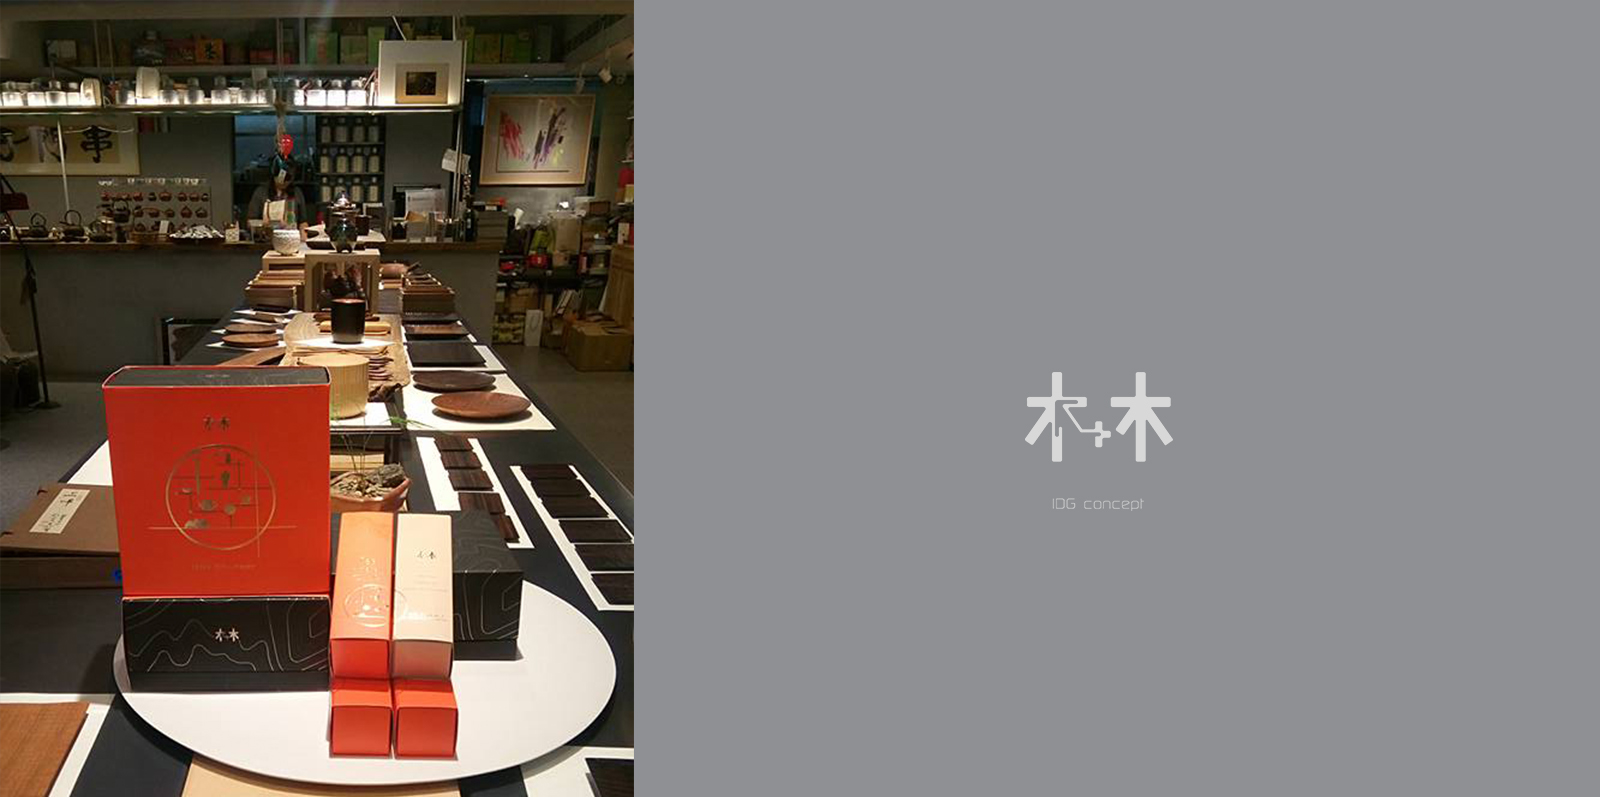 香港 木+木 的產品 在台北 永康街 時尚前衛的茶館 串門子 開賣了